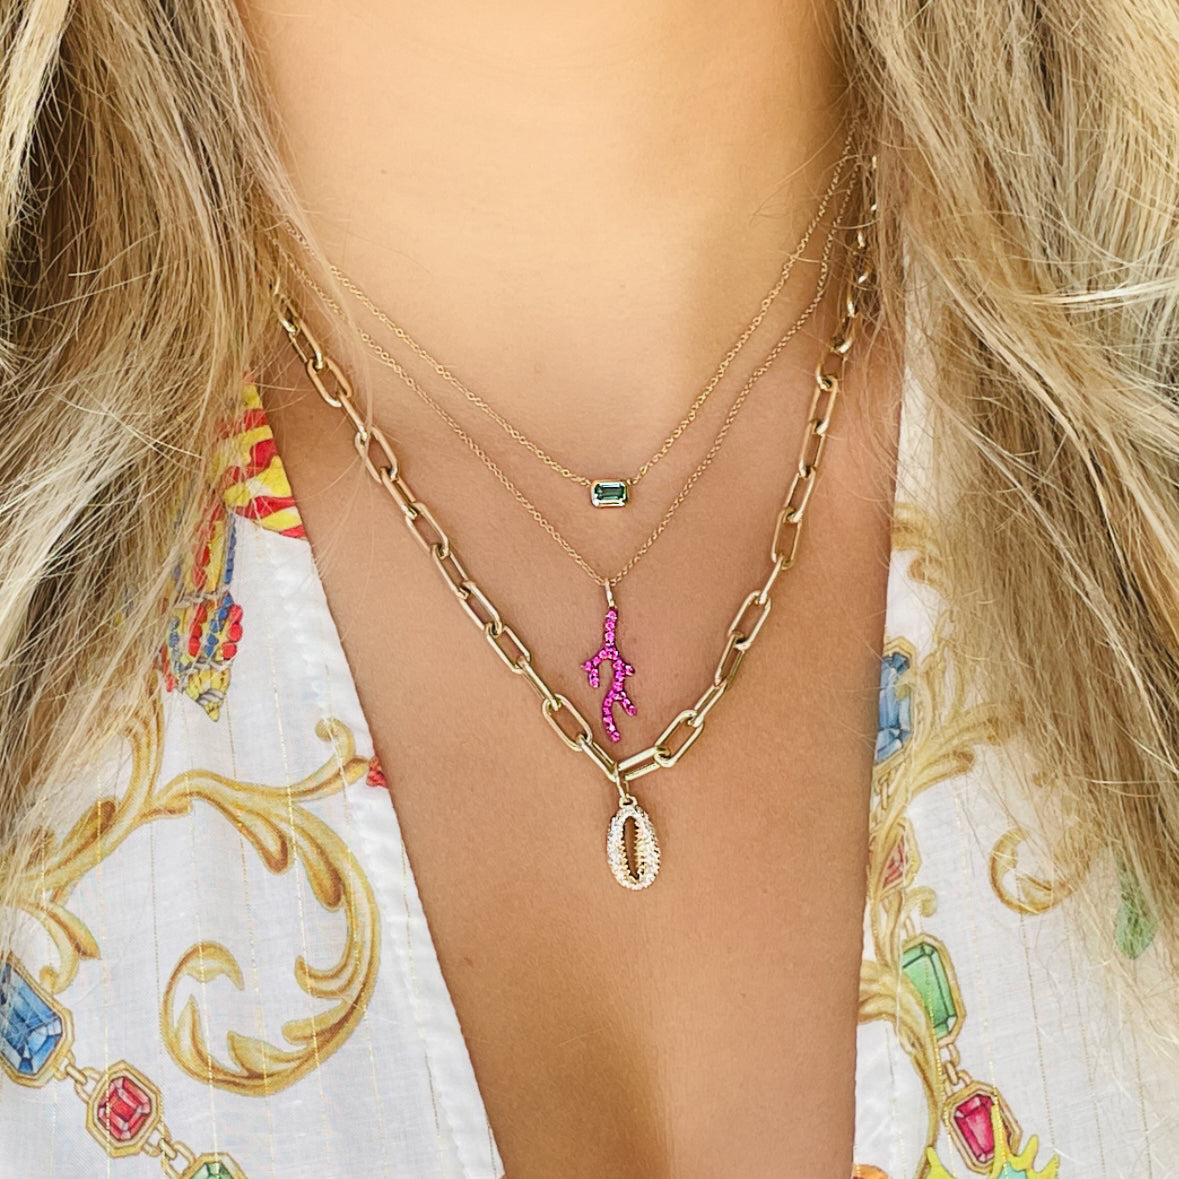 14K Gold Pave Coral Ruby Necklace - Necklaces - Izakov Diamonds + Fine Jewelry